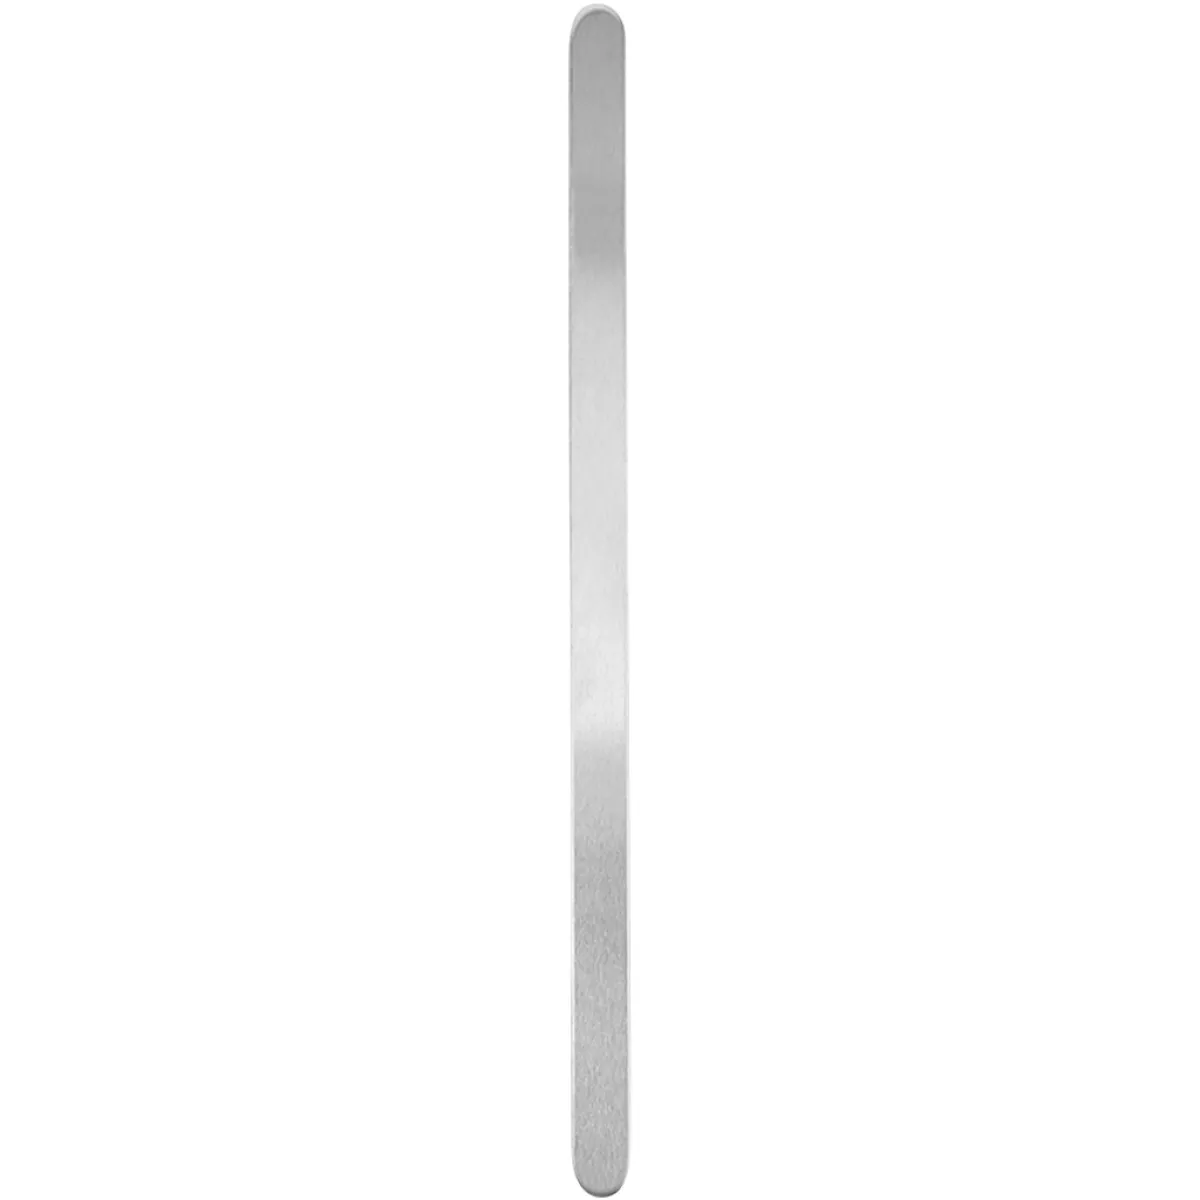 #2 - Metalbånd, L: 15,2 cm, B: 6 mm, tykkelse 1,6 mm, aluminium, 12 stk./ 1 pk.